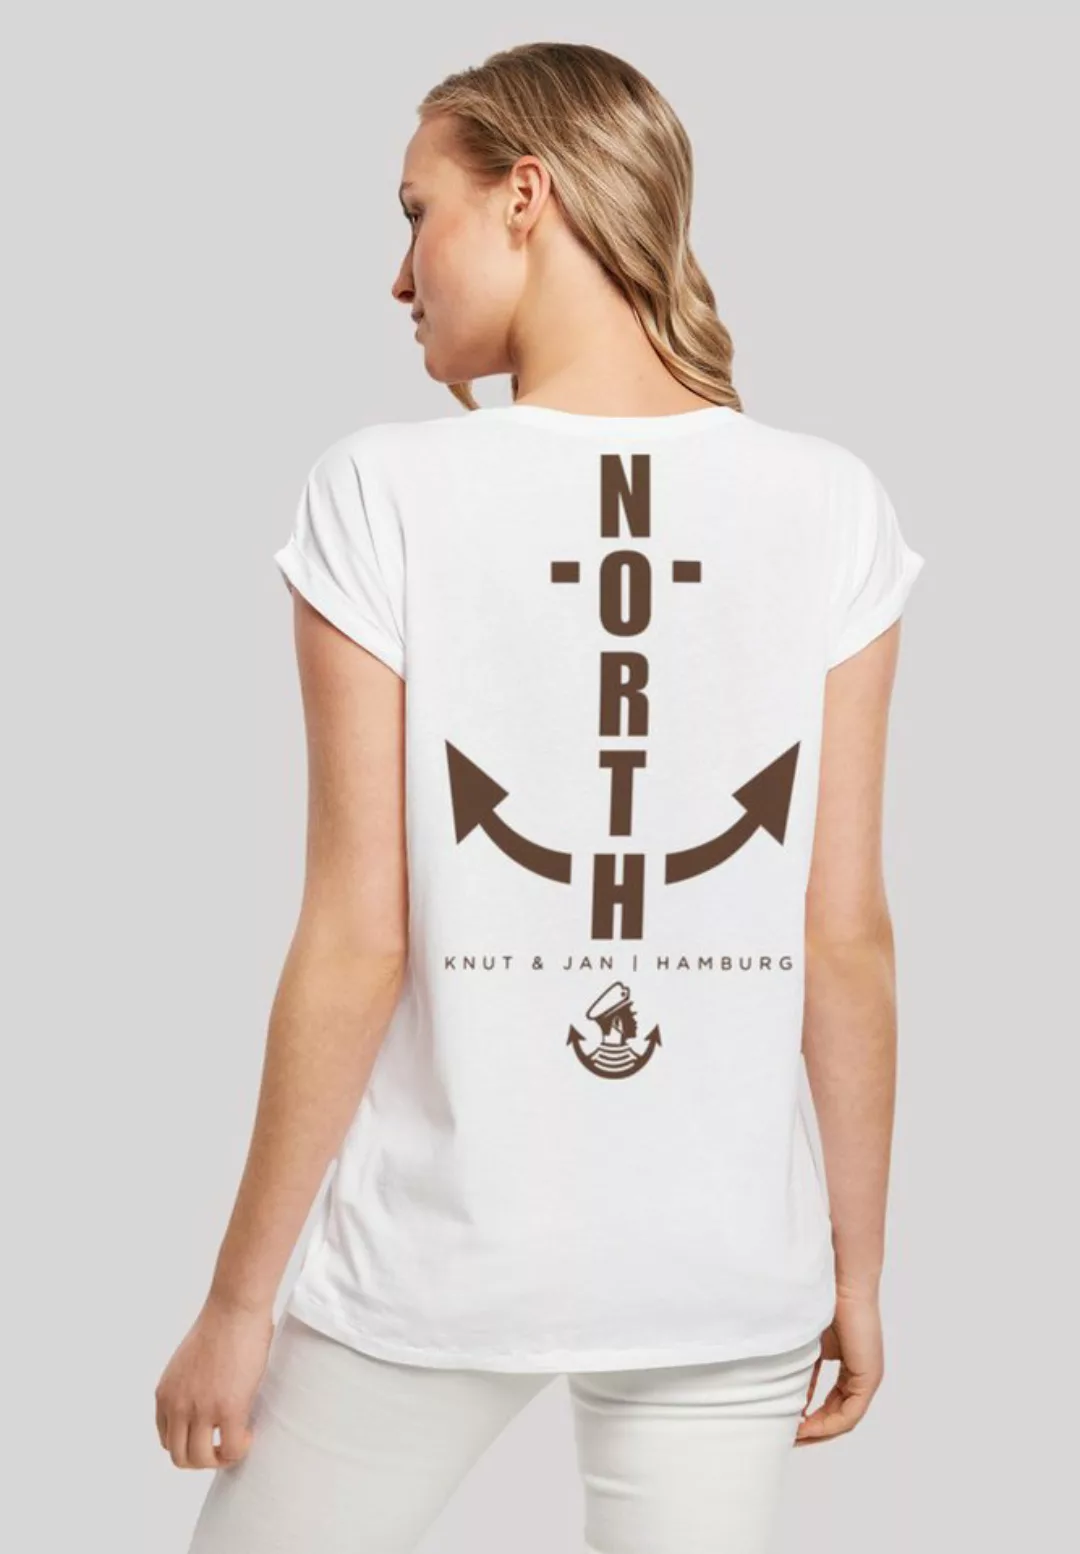 F4NT4STIC T-Shirt "North Anker Knut & Jan Hamburg", Print günstig online kaufen